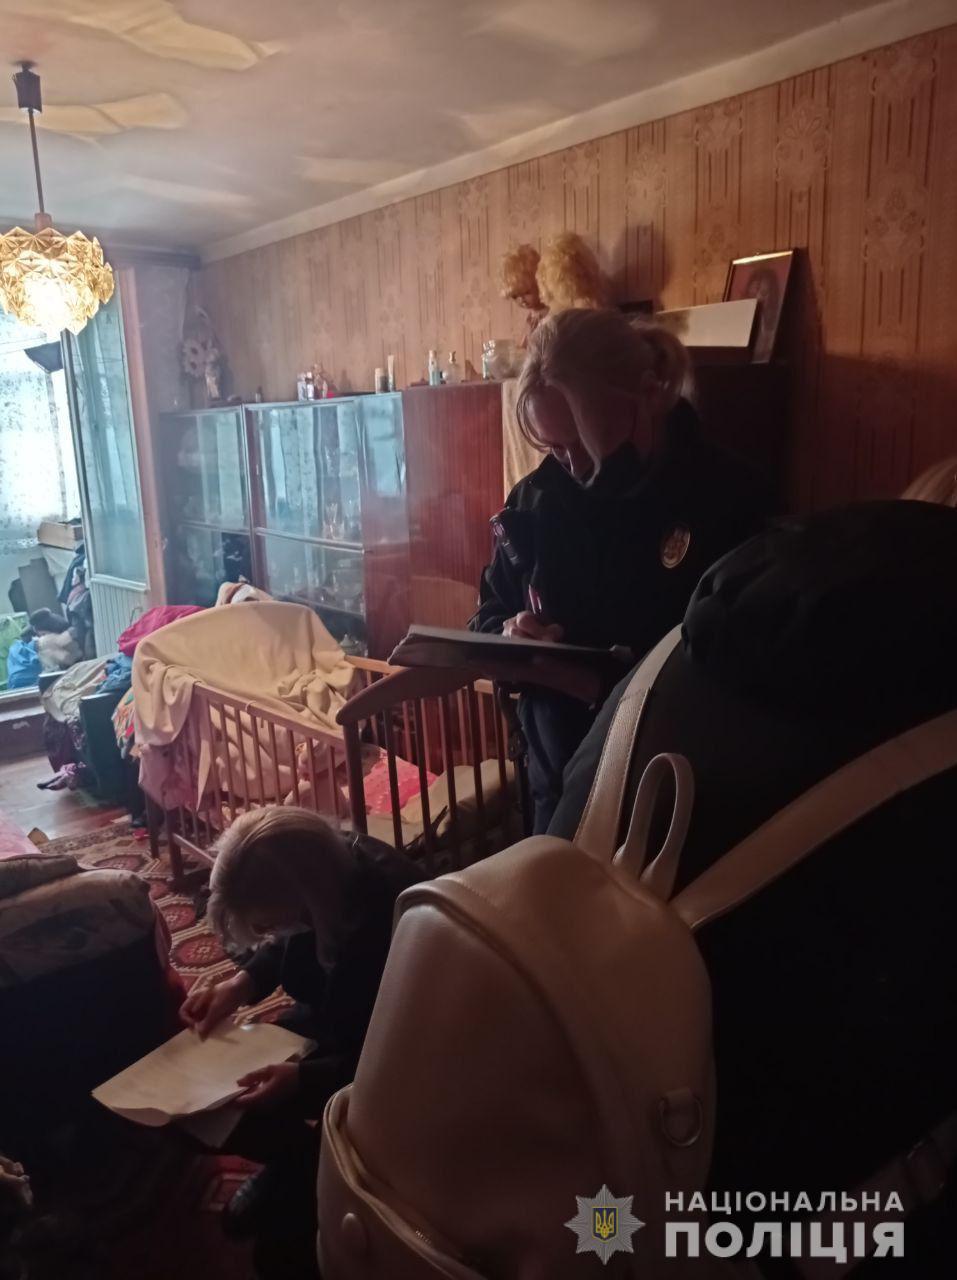 ВИДЕО: В Харькове мать кулаками избивала 1,5-летнего сына "в целях воспитания" у всех на глазах: дело закончилось полицией